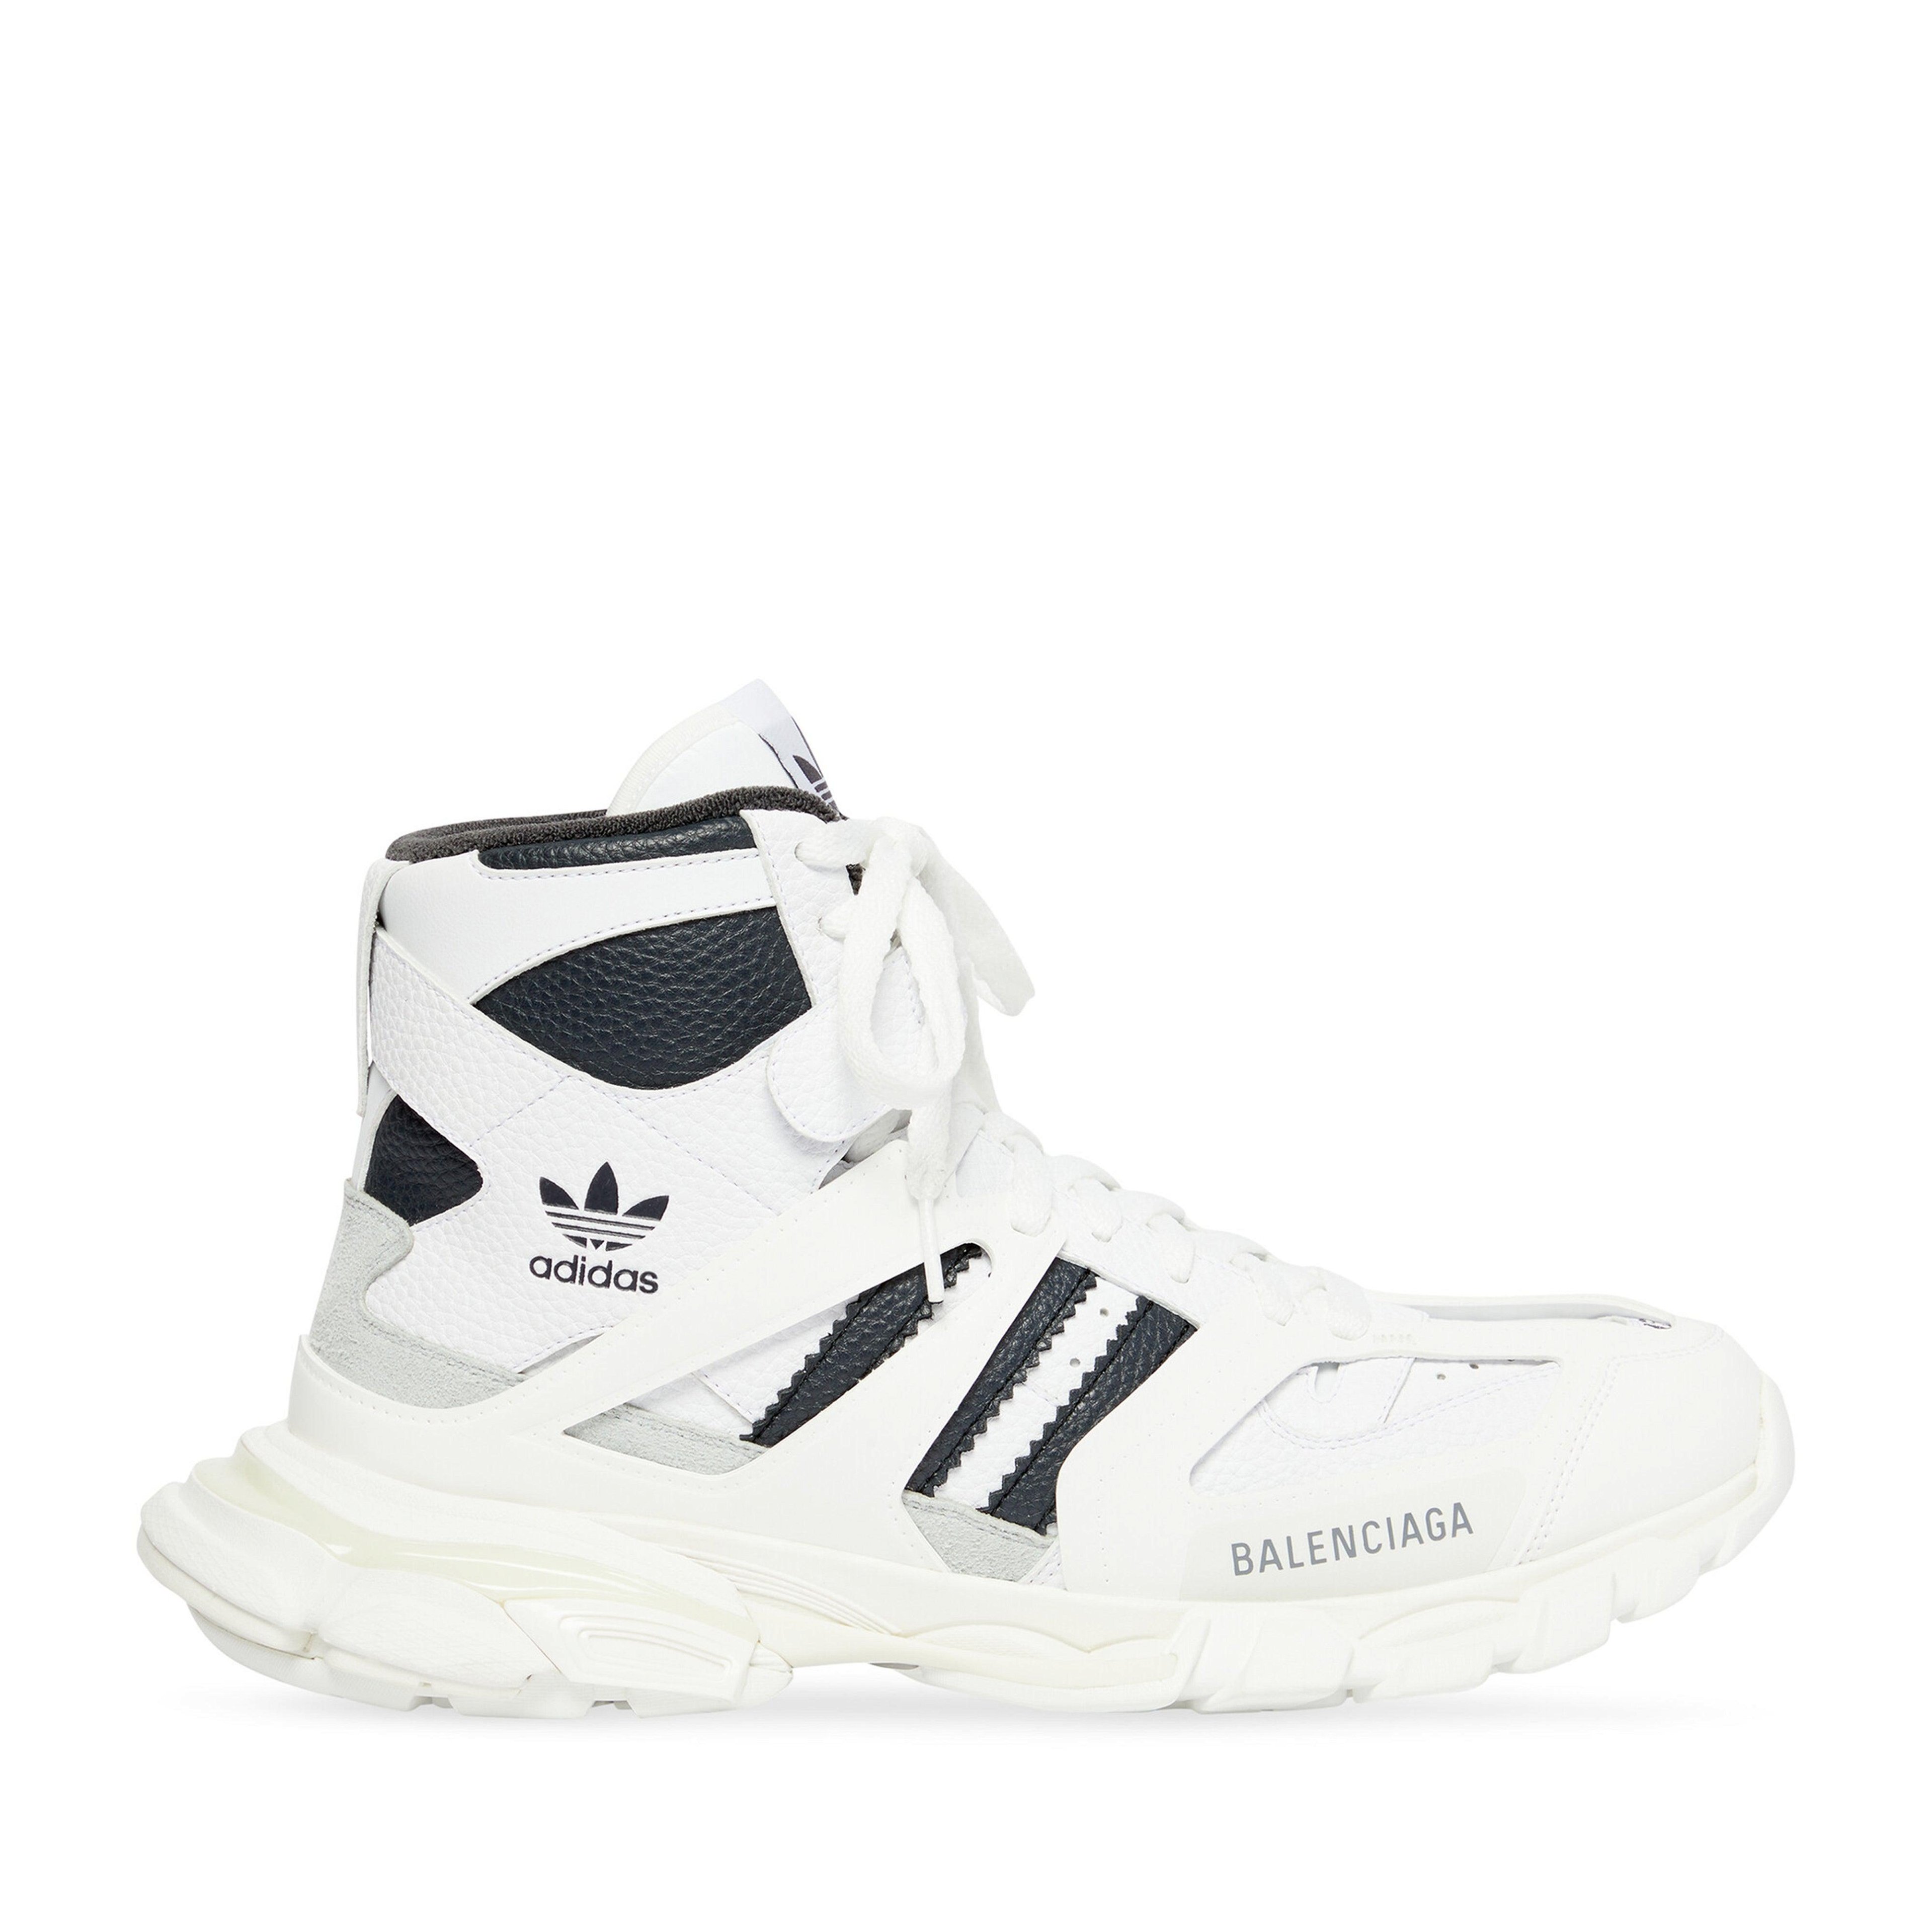 Balenciaga / Adidas Men's Track Forum Sneakers (White/Dark Grey) by BALENCIAGA